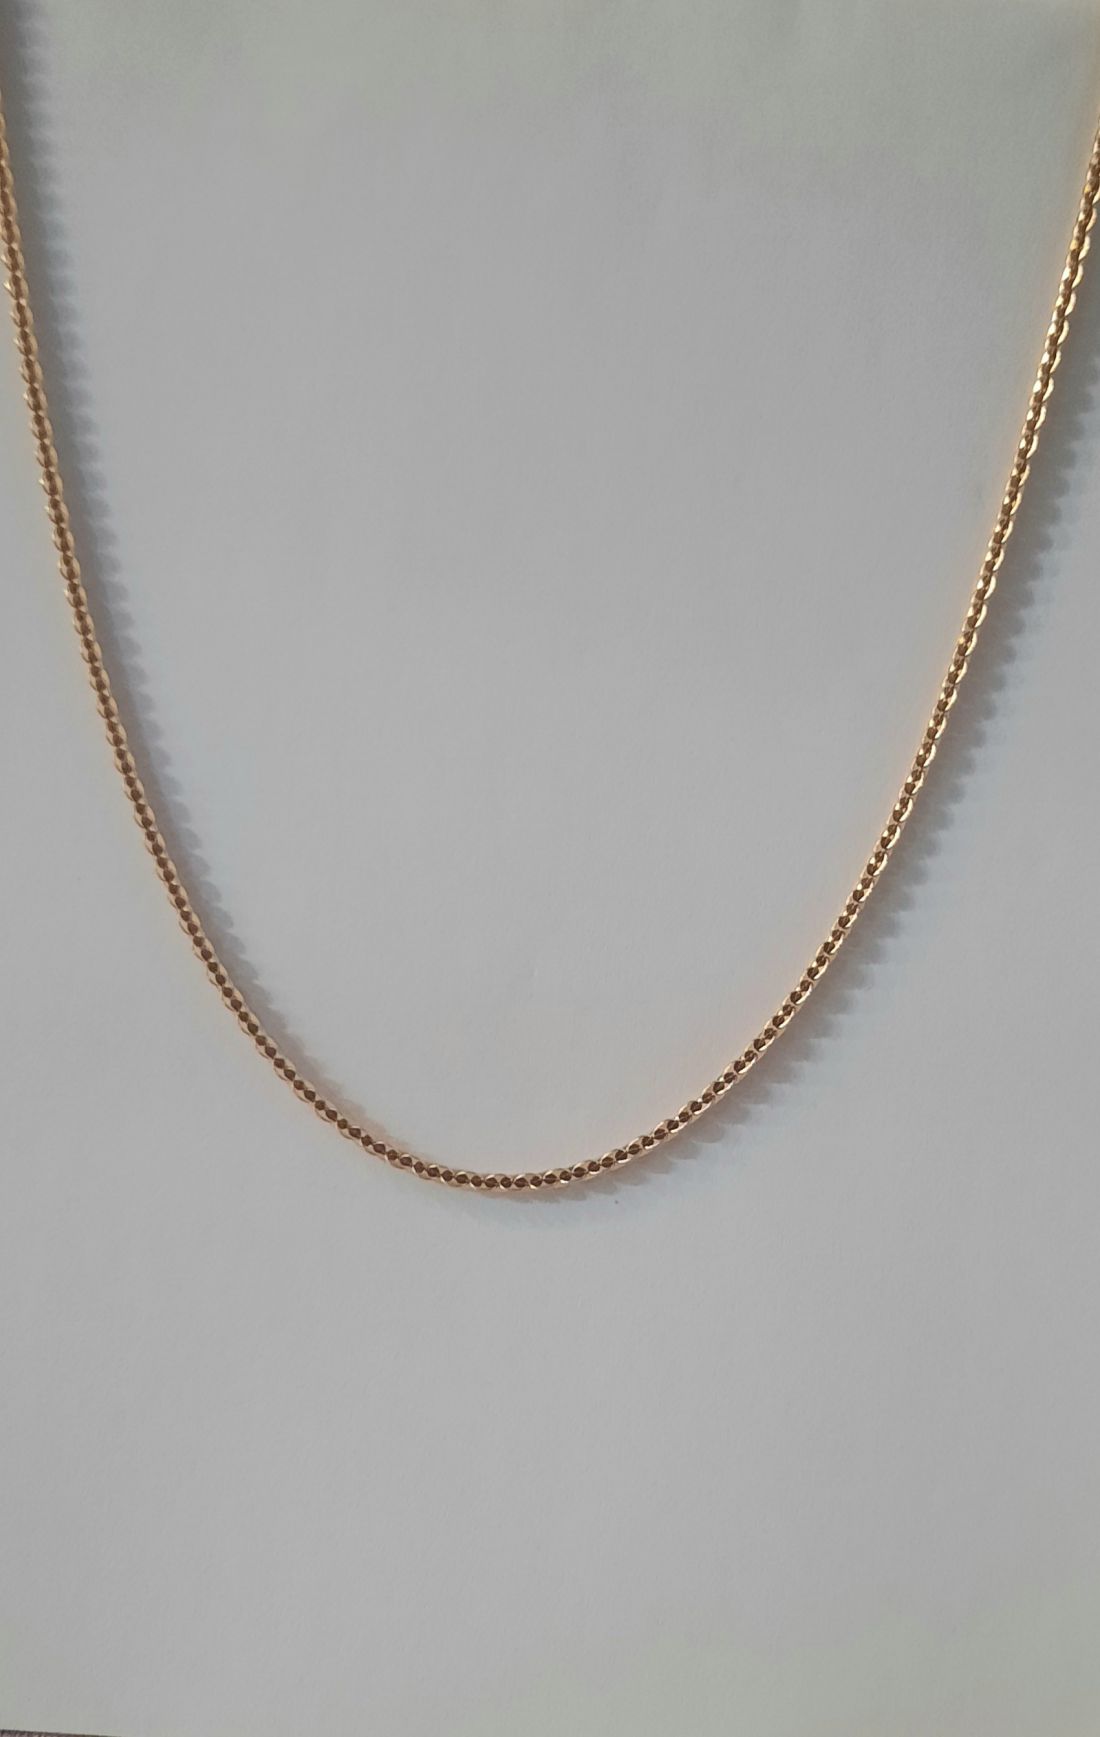 Goldg Filled nyaklánc 50cm hosszú 2mm széles 